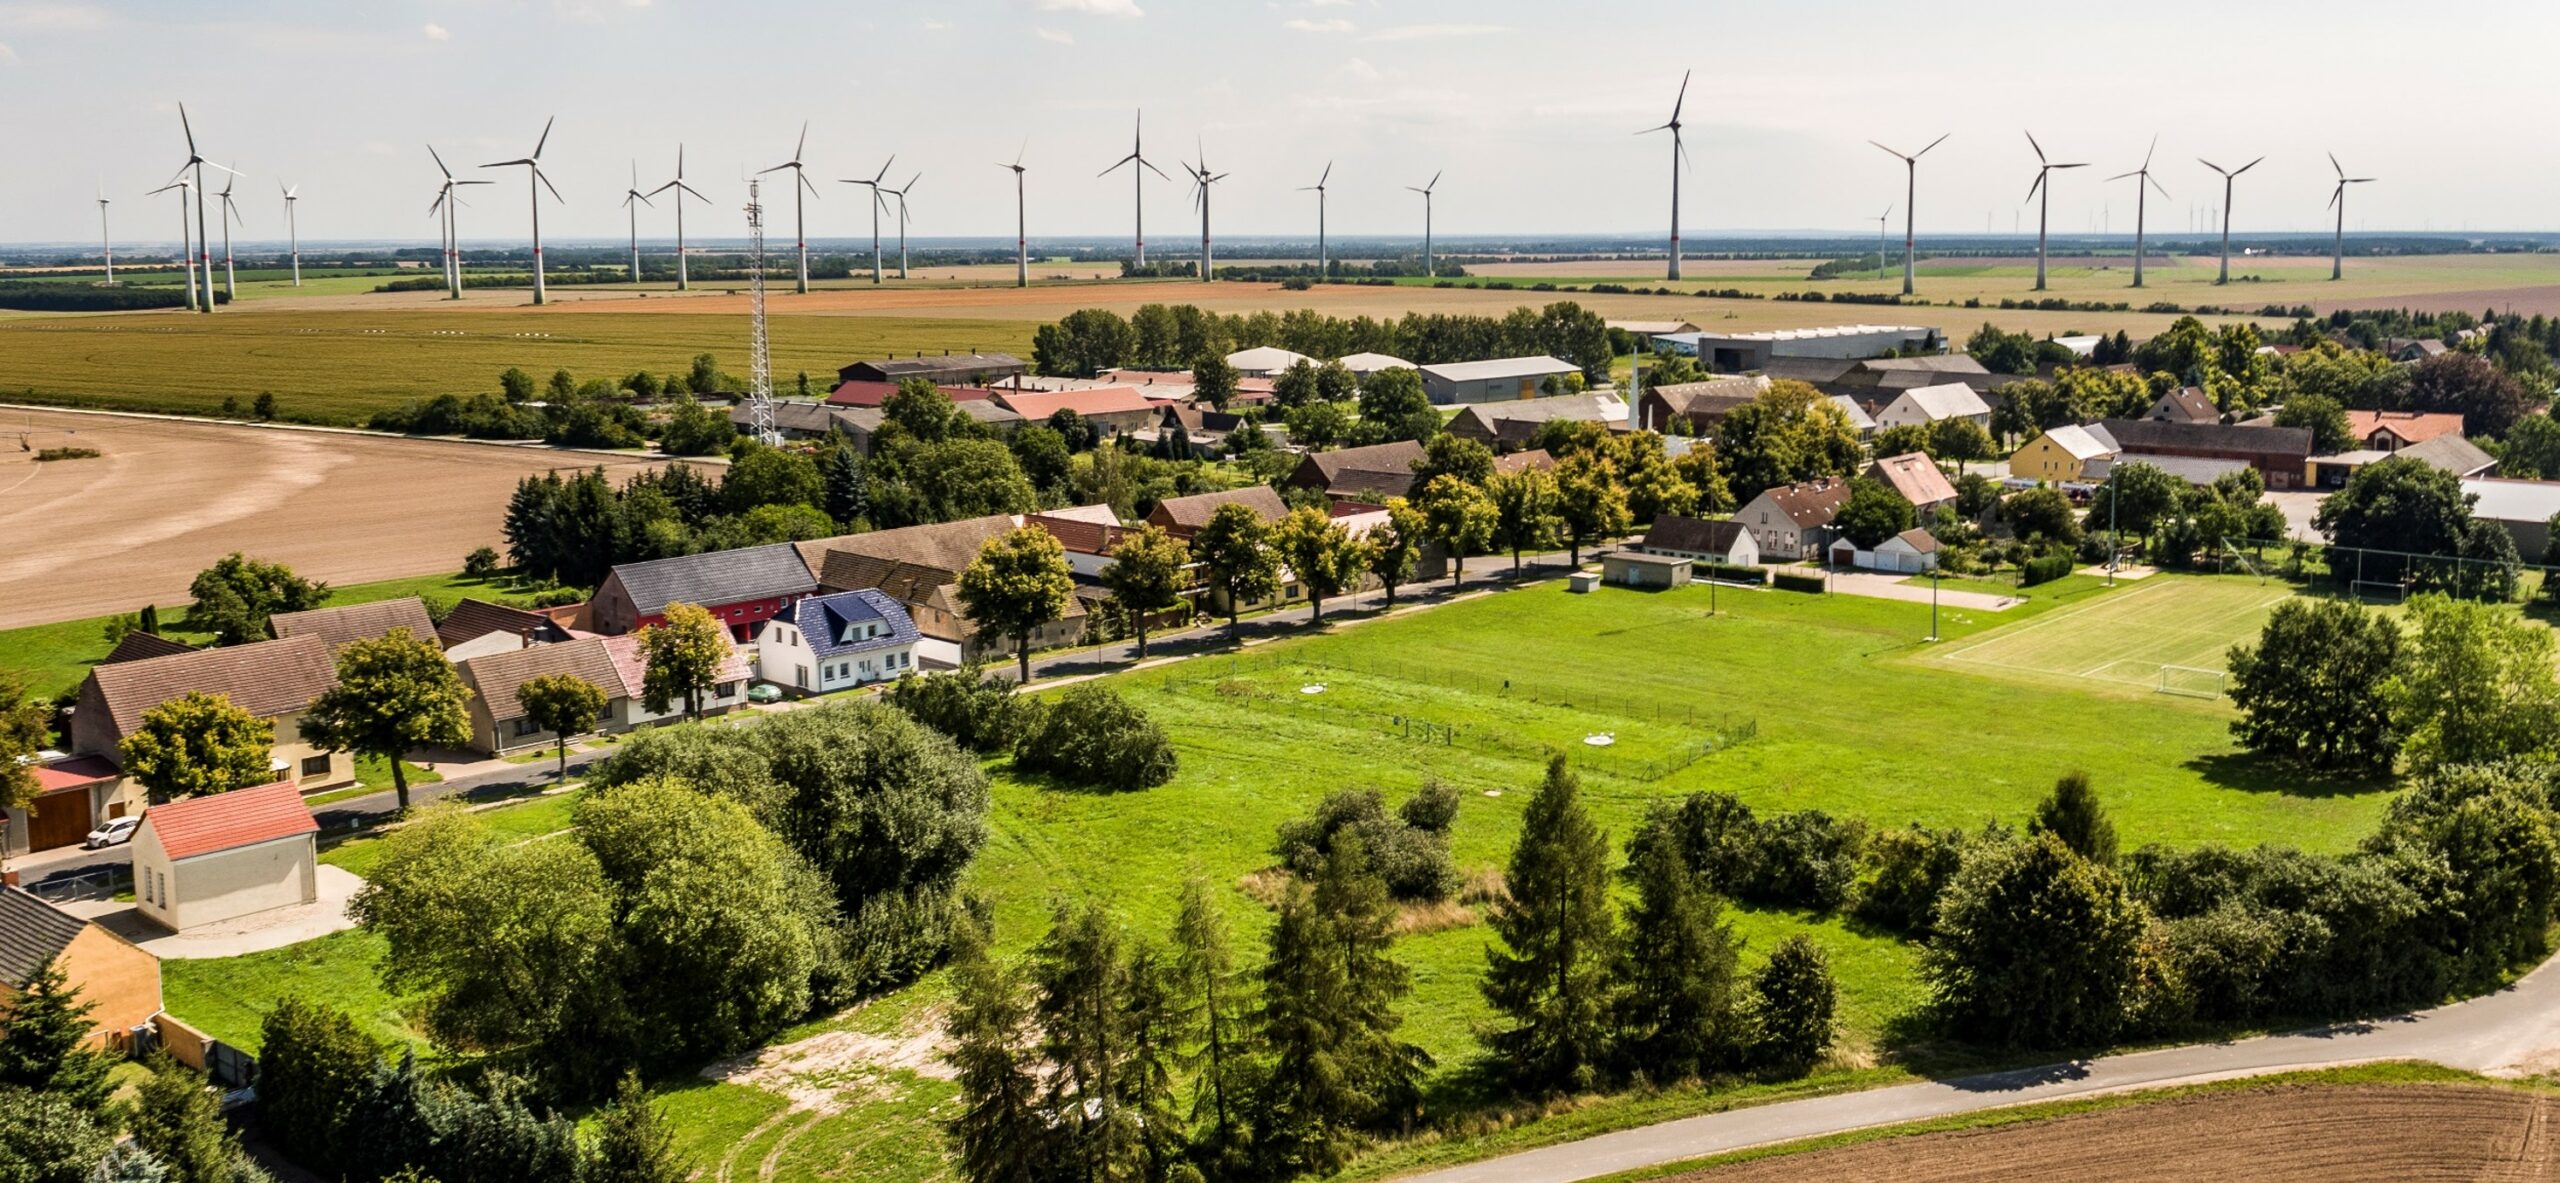 Ortsteil Feldheim in Treuenbrietzen mit Windpark